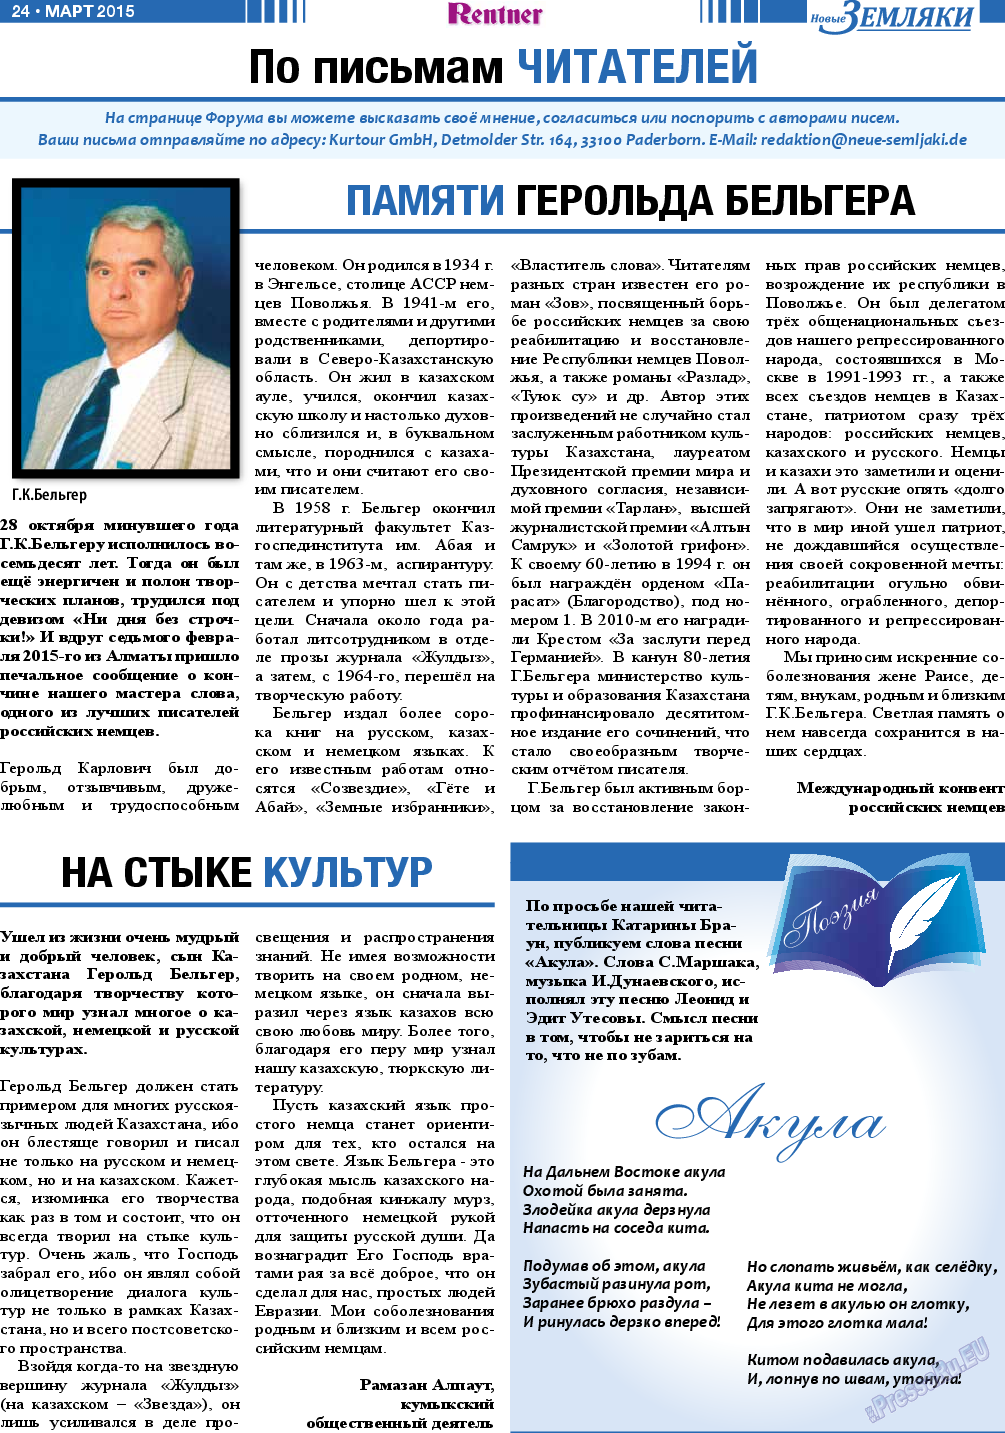 Новые Земляки, газета. 2015 №3 стр.24